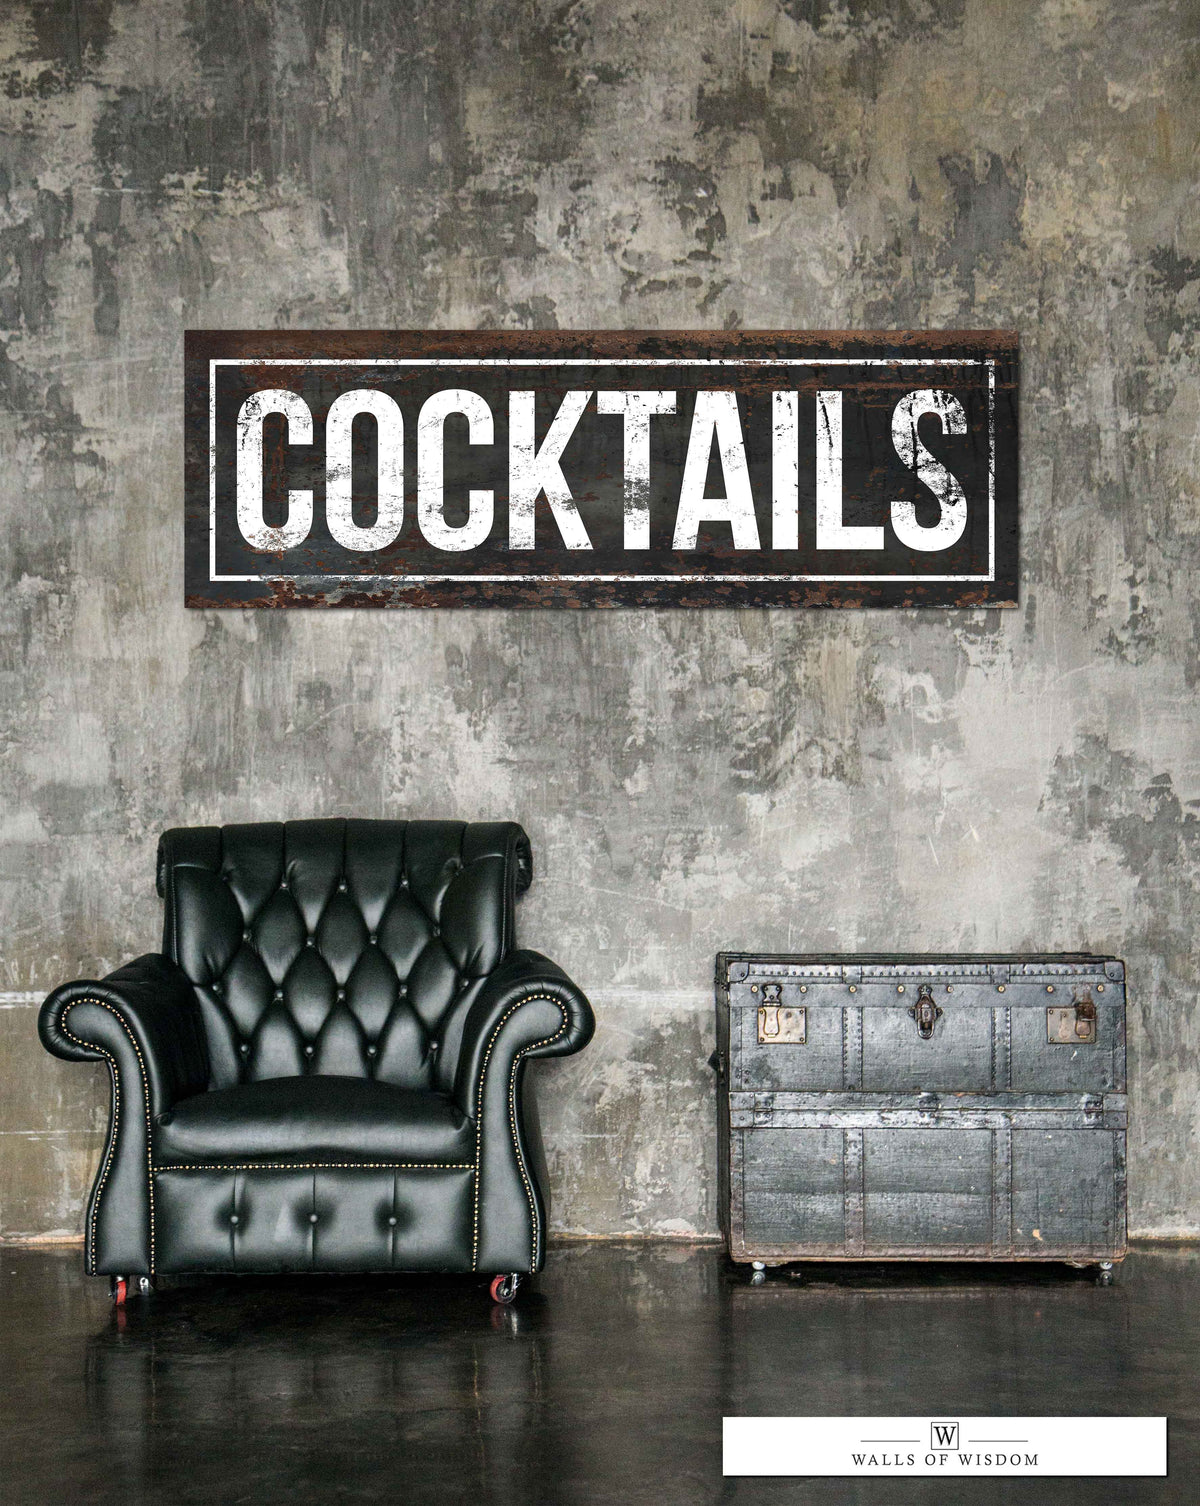 Vintage Black Distressed Cocktails Wall Art for Bar & Lounge